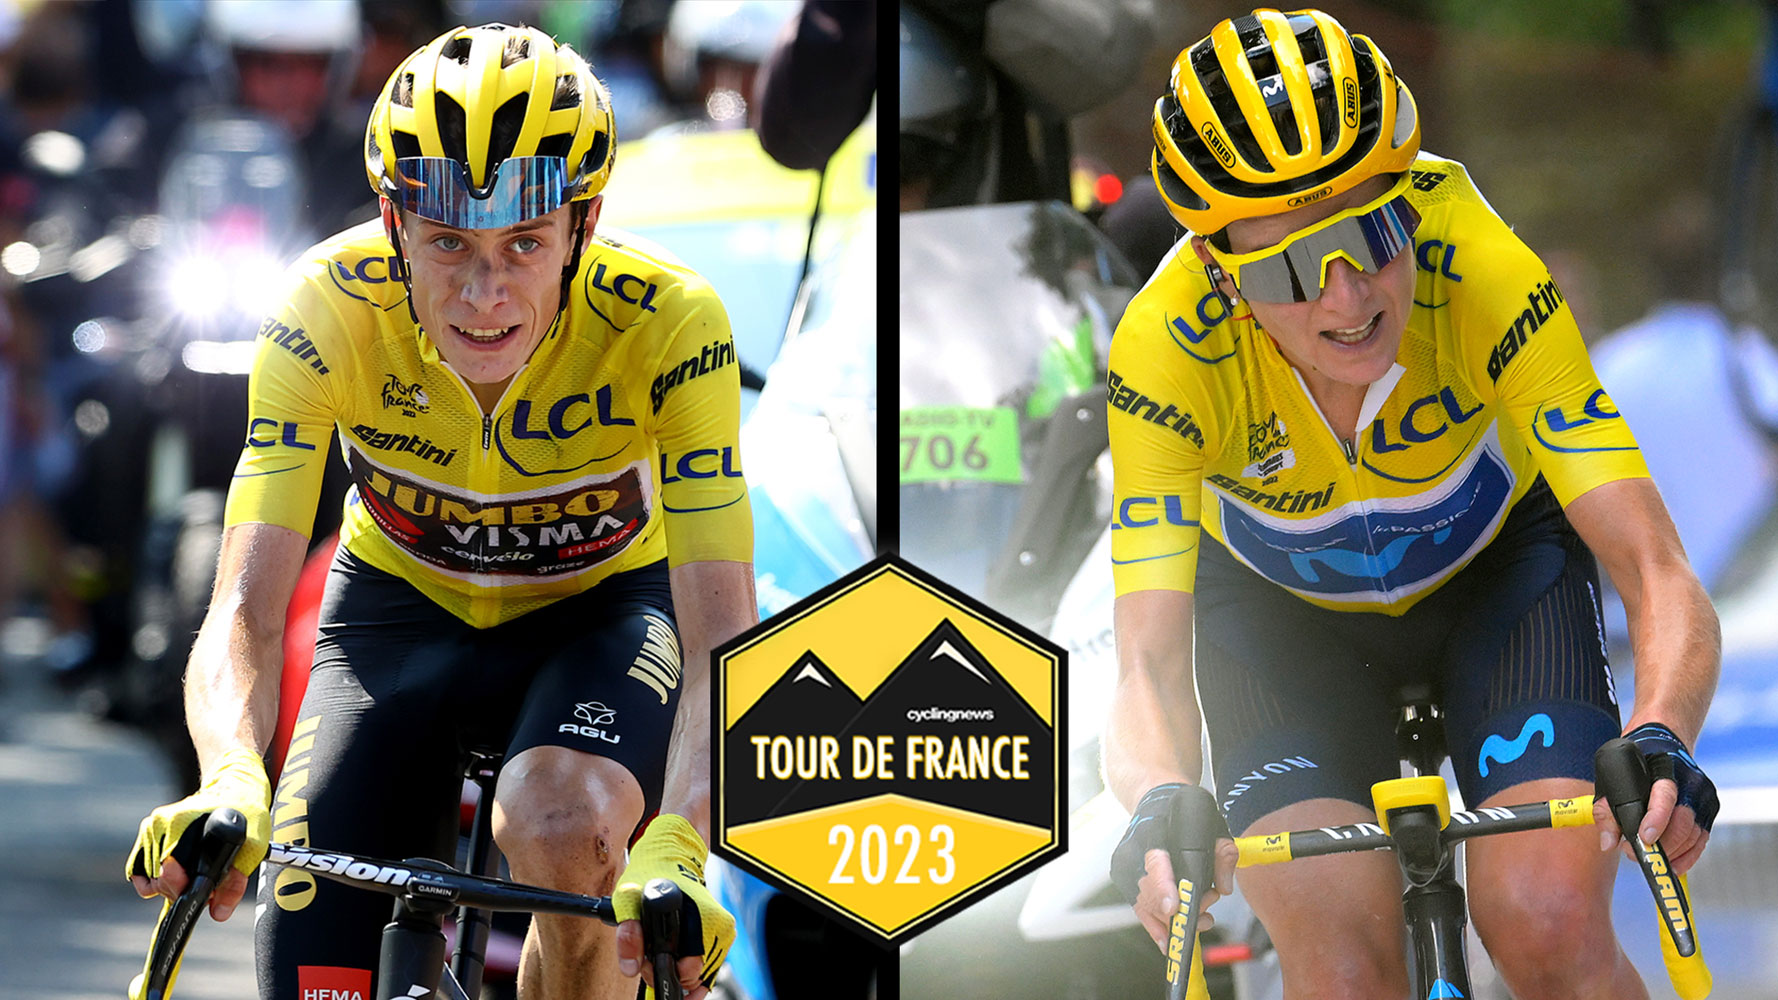 Jonas Vingegaard and Annemiek van Vleuten won the 2022 Tour de France and Tour de France Femmes